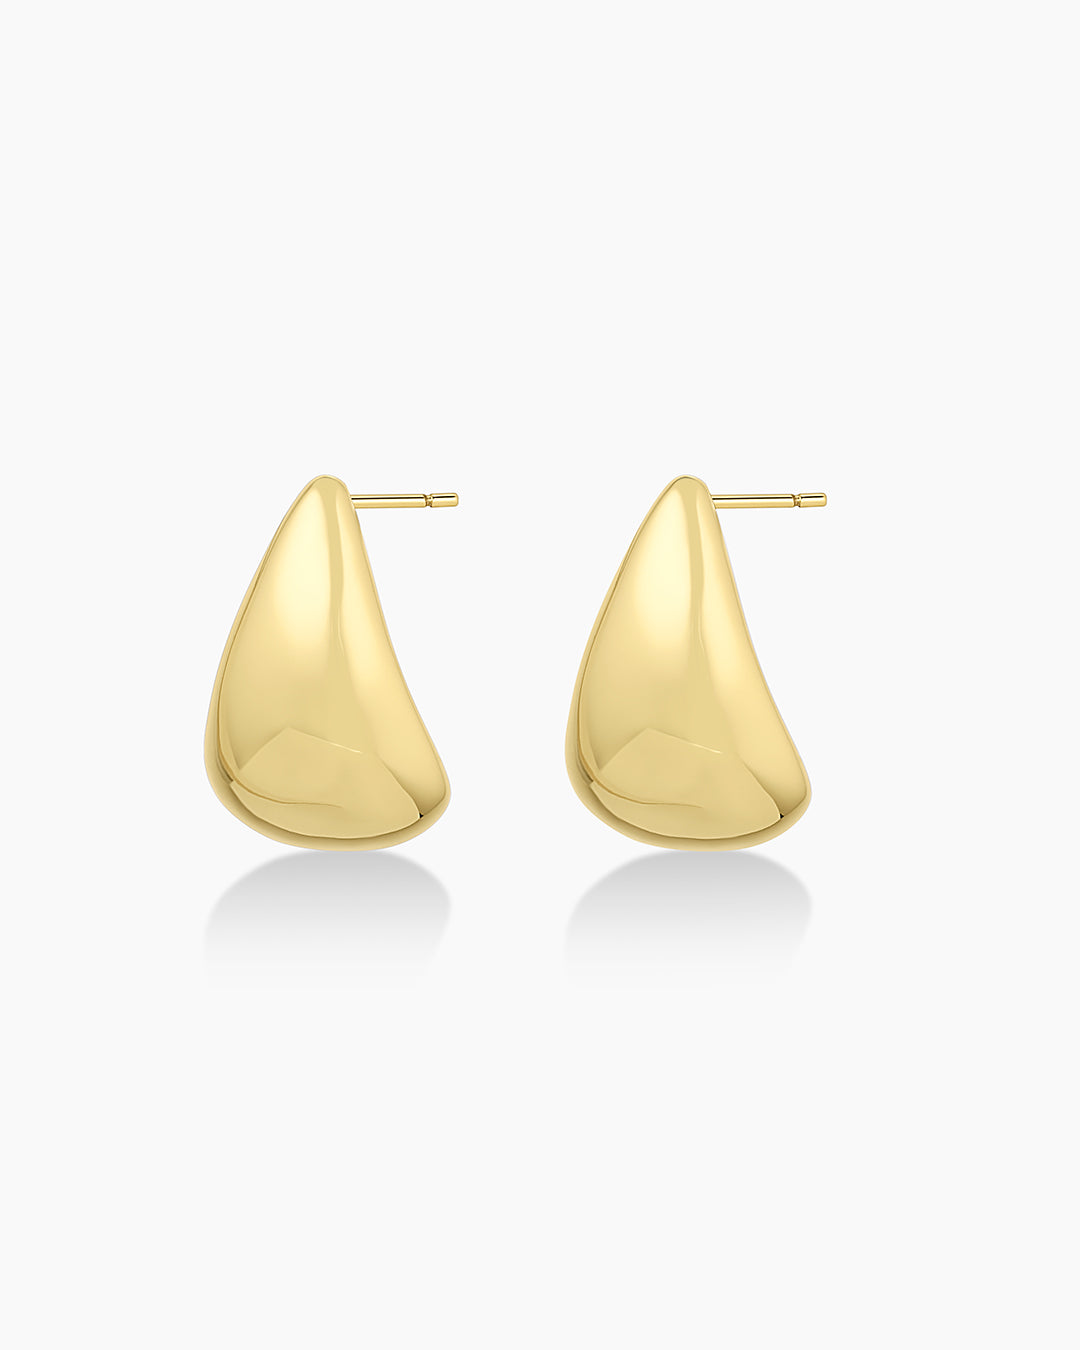 Pure Silver Earrings Online | Western Earrings Design | For Girls, Women